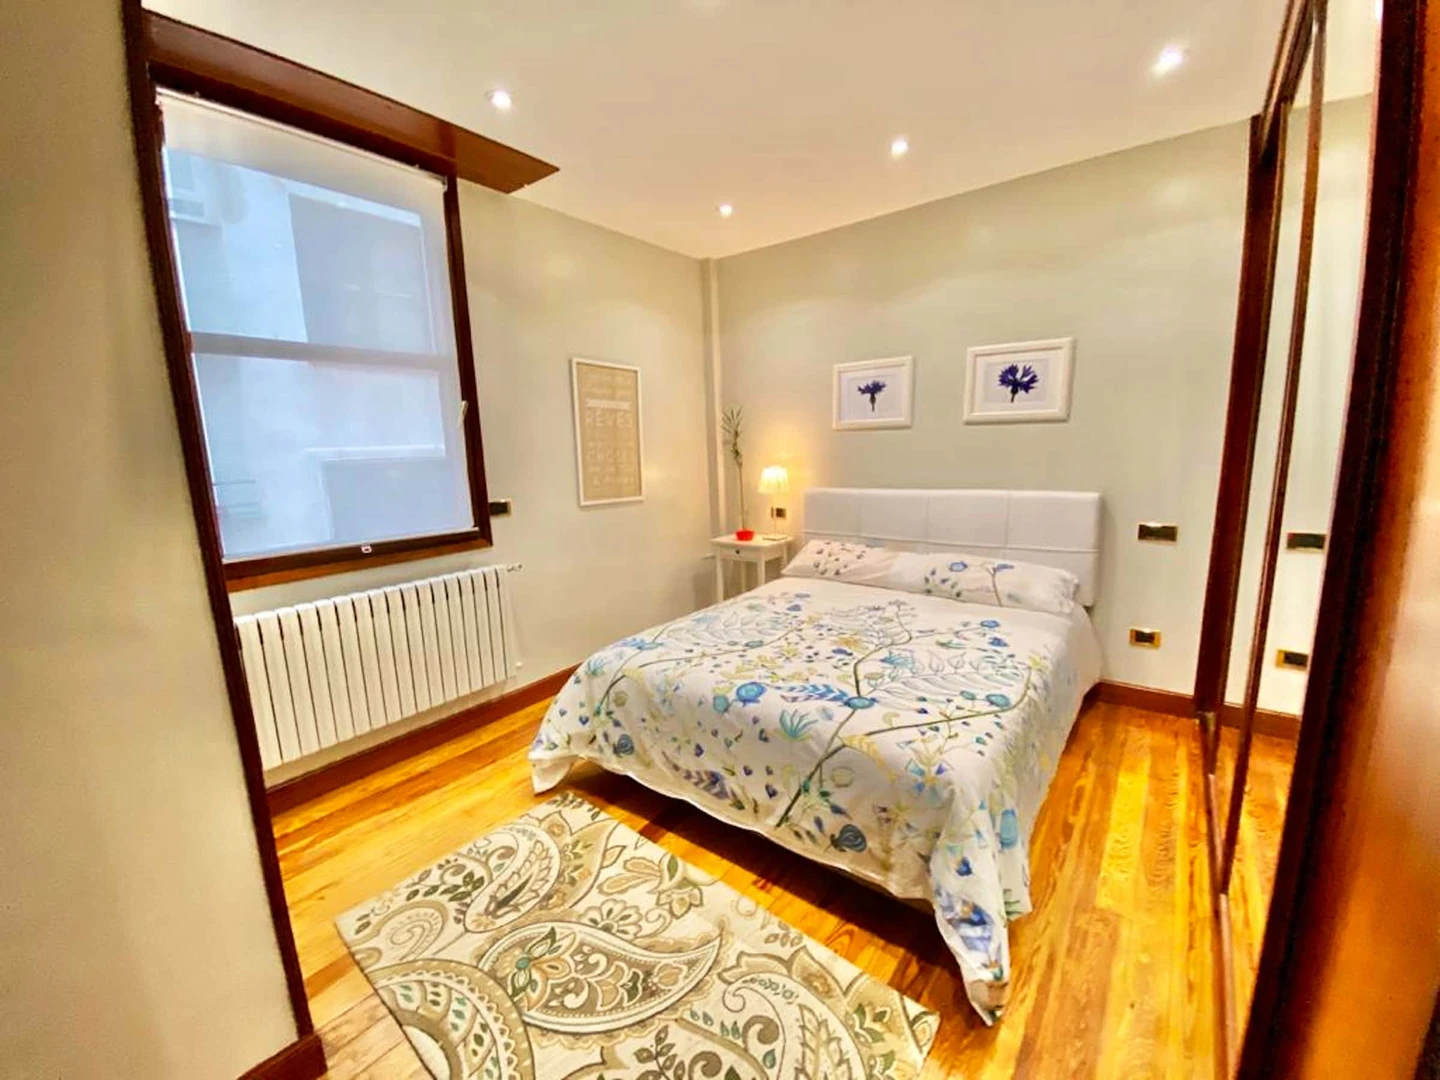 Alquiler de habitaciones por meses en Bilbao